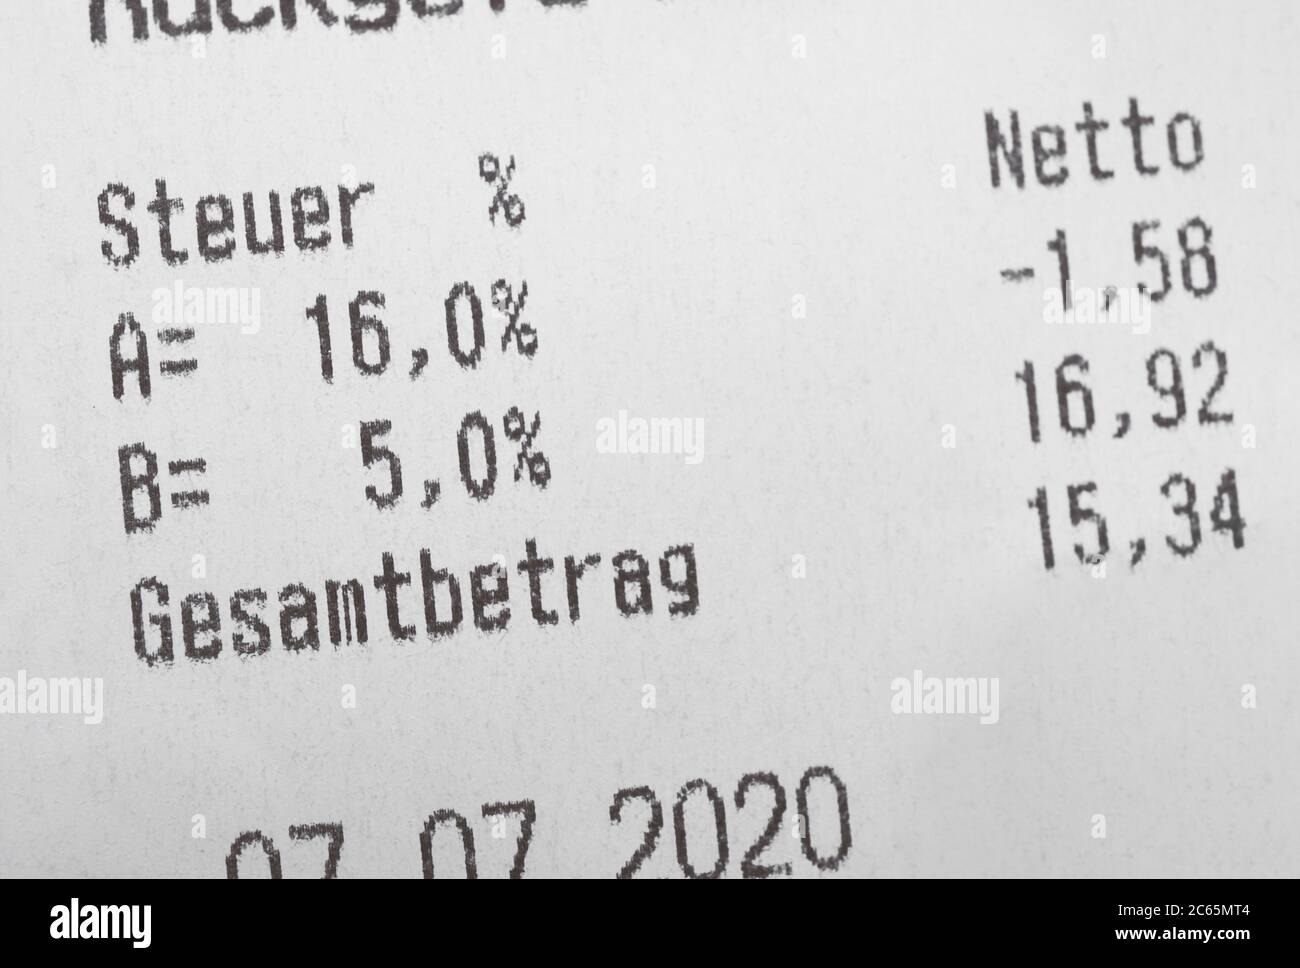 La ricevuta mostra un'aliquota IVA ridotta in Germania - l'IVA è chiamata MwSt o Mehrwertsteuer in tedesco - traduzione in inglese: Steuer significa tassa e Gesamtbetrag significa importo totale Foto Stock